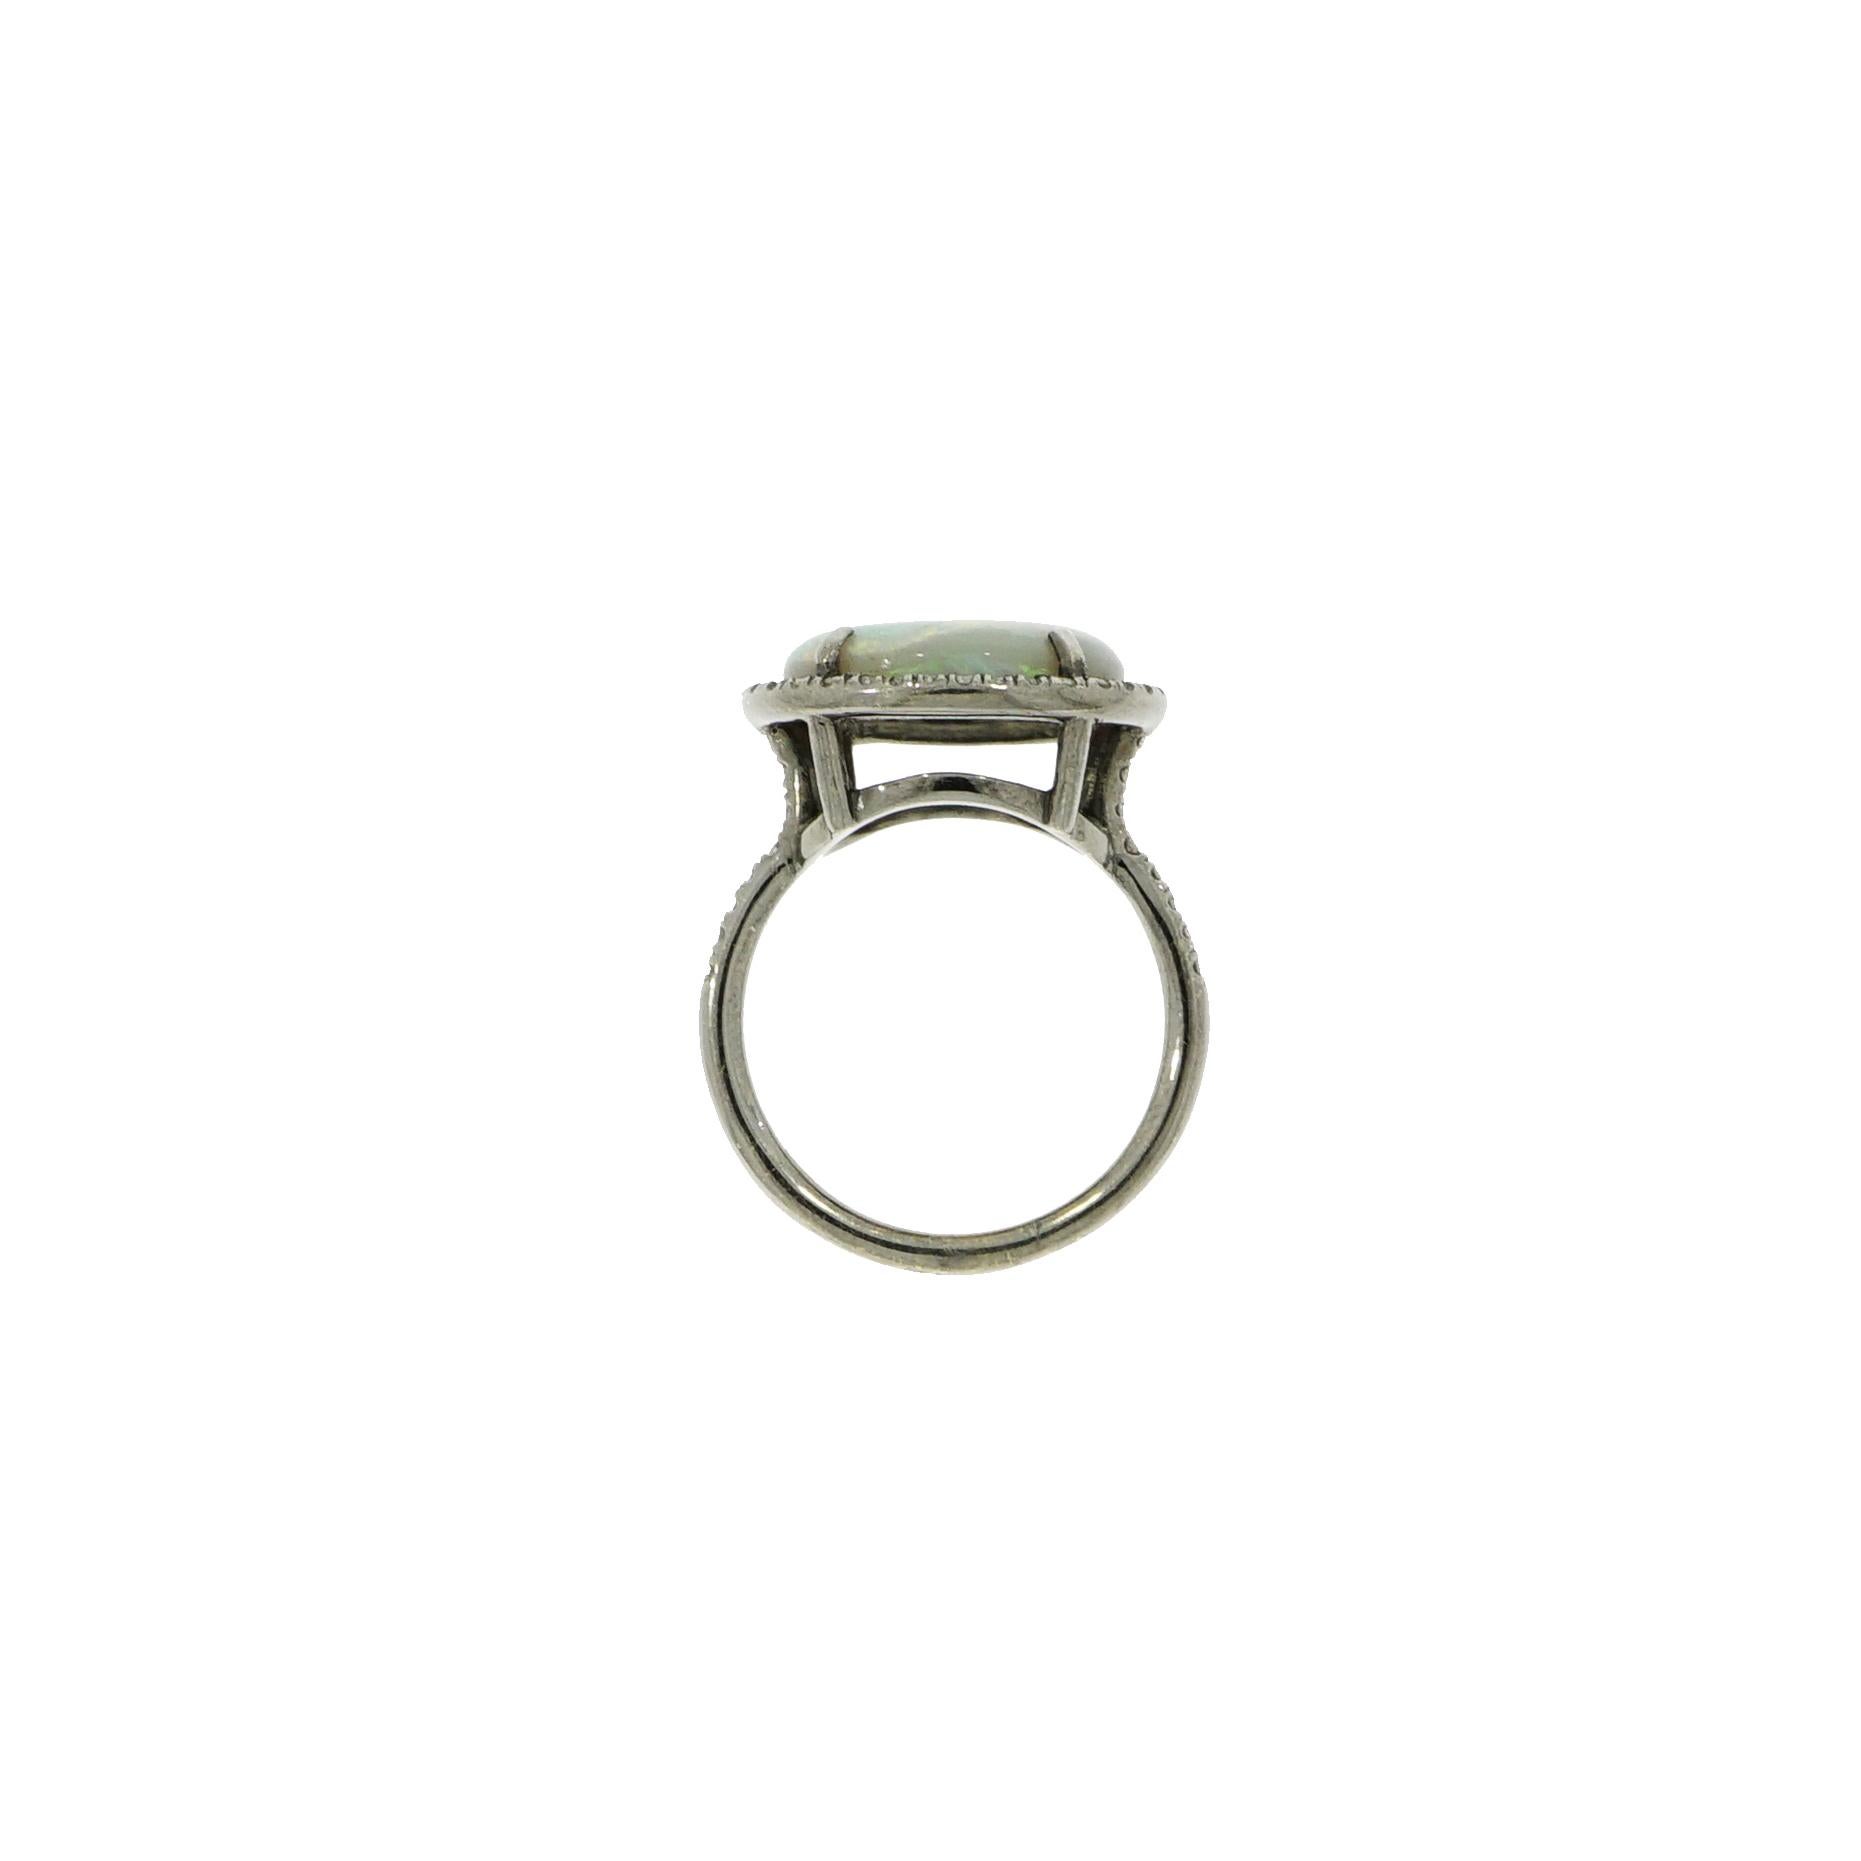 Dieser Ring mit blauem Opal wertet jeden Sommerlook auf.
Entworfen und gefertigt in NYC in 18k Weißgold und schwarz rhodiniert, um einen Kontrast und eine Betonung auf den schönen ovalen Blauen Opal, umgeben von weißen runden Diamanten, zu schaffen.